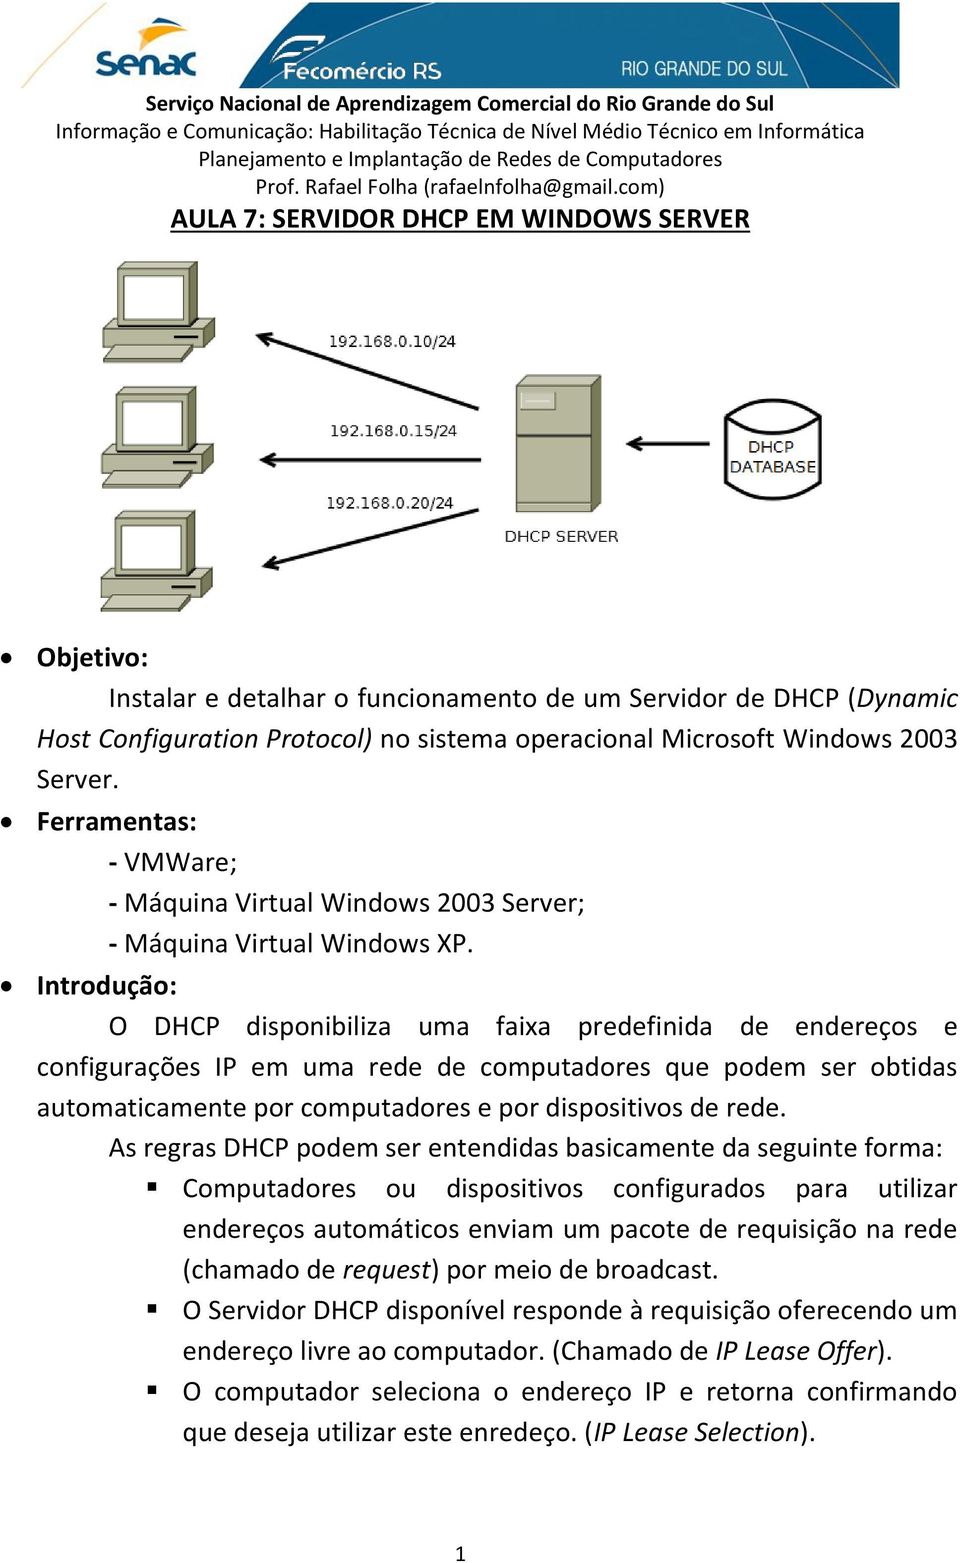 Introdução: O DHCP disponibiliza uma faixa predefinida de endereços e configurações IP em uma rede de computadores que podem ser obtidas automaticamente por computadores e por dispositivos de rede.